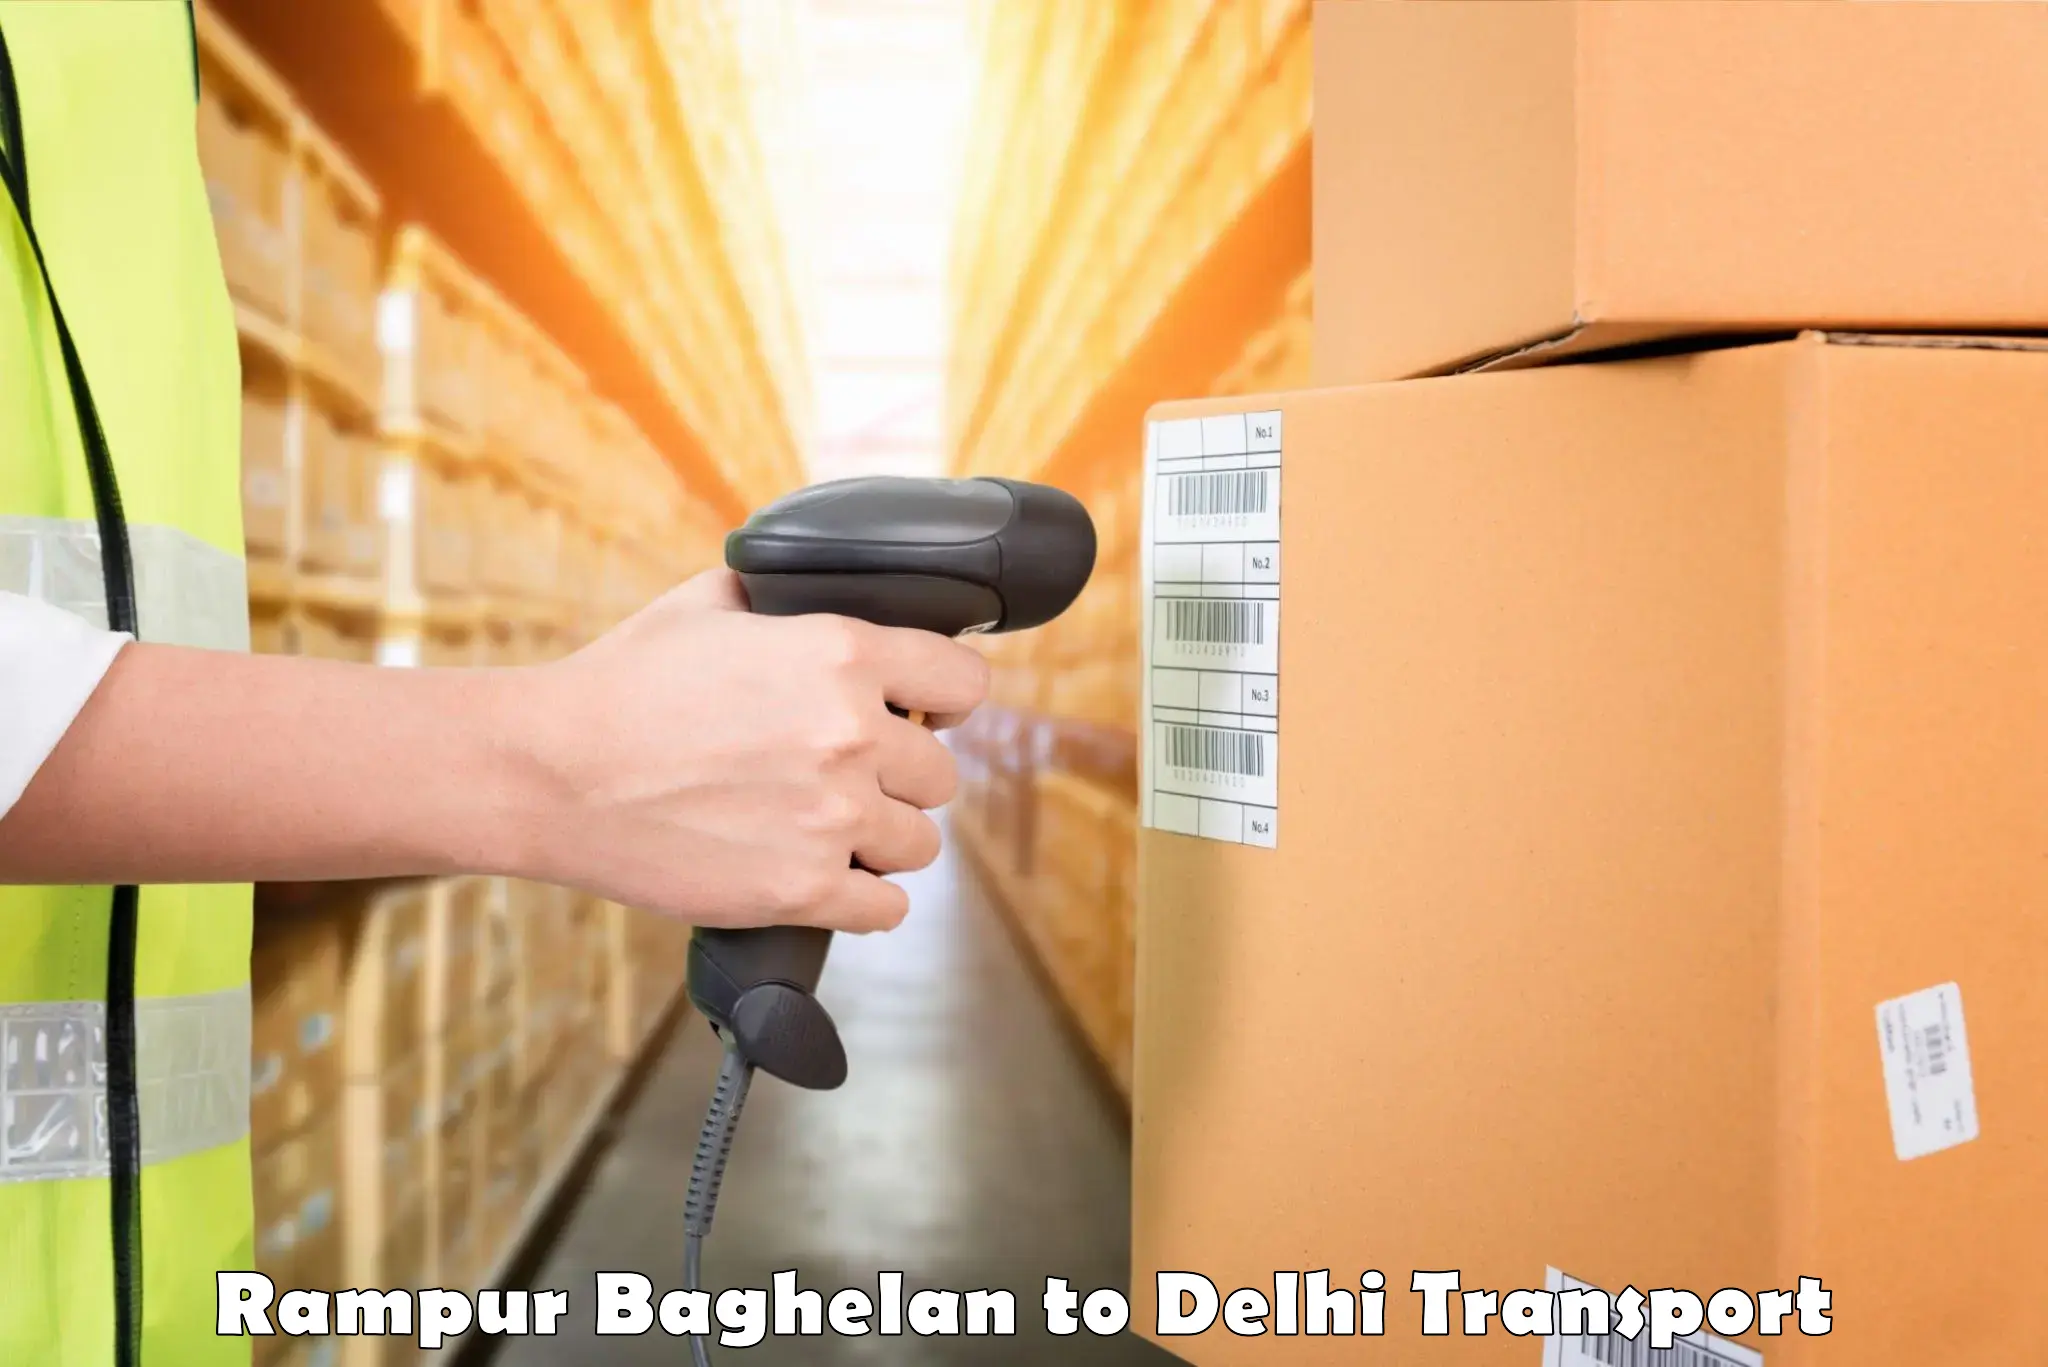 Lorry transport service Rampur Baghelan to NCR